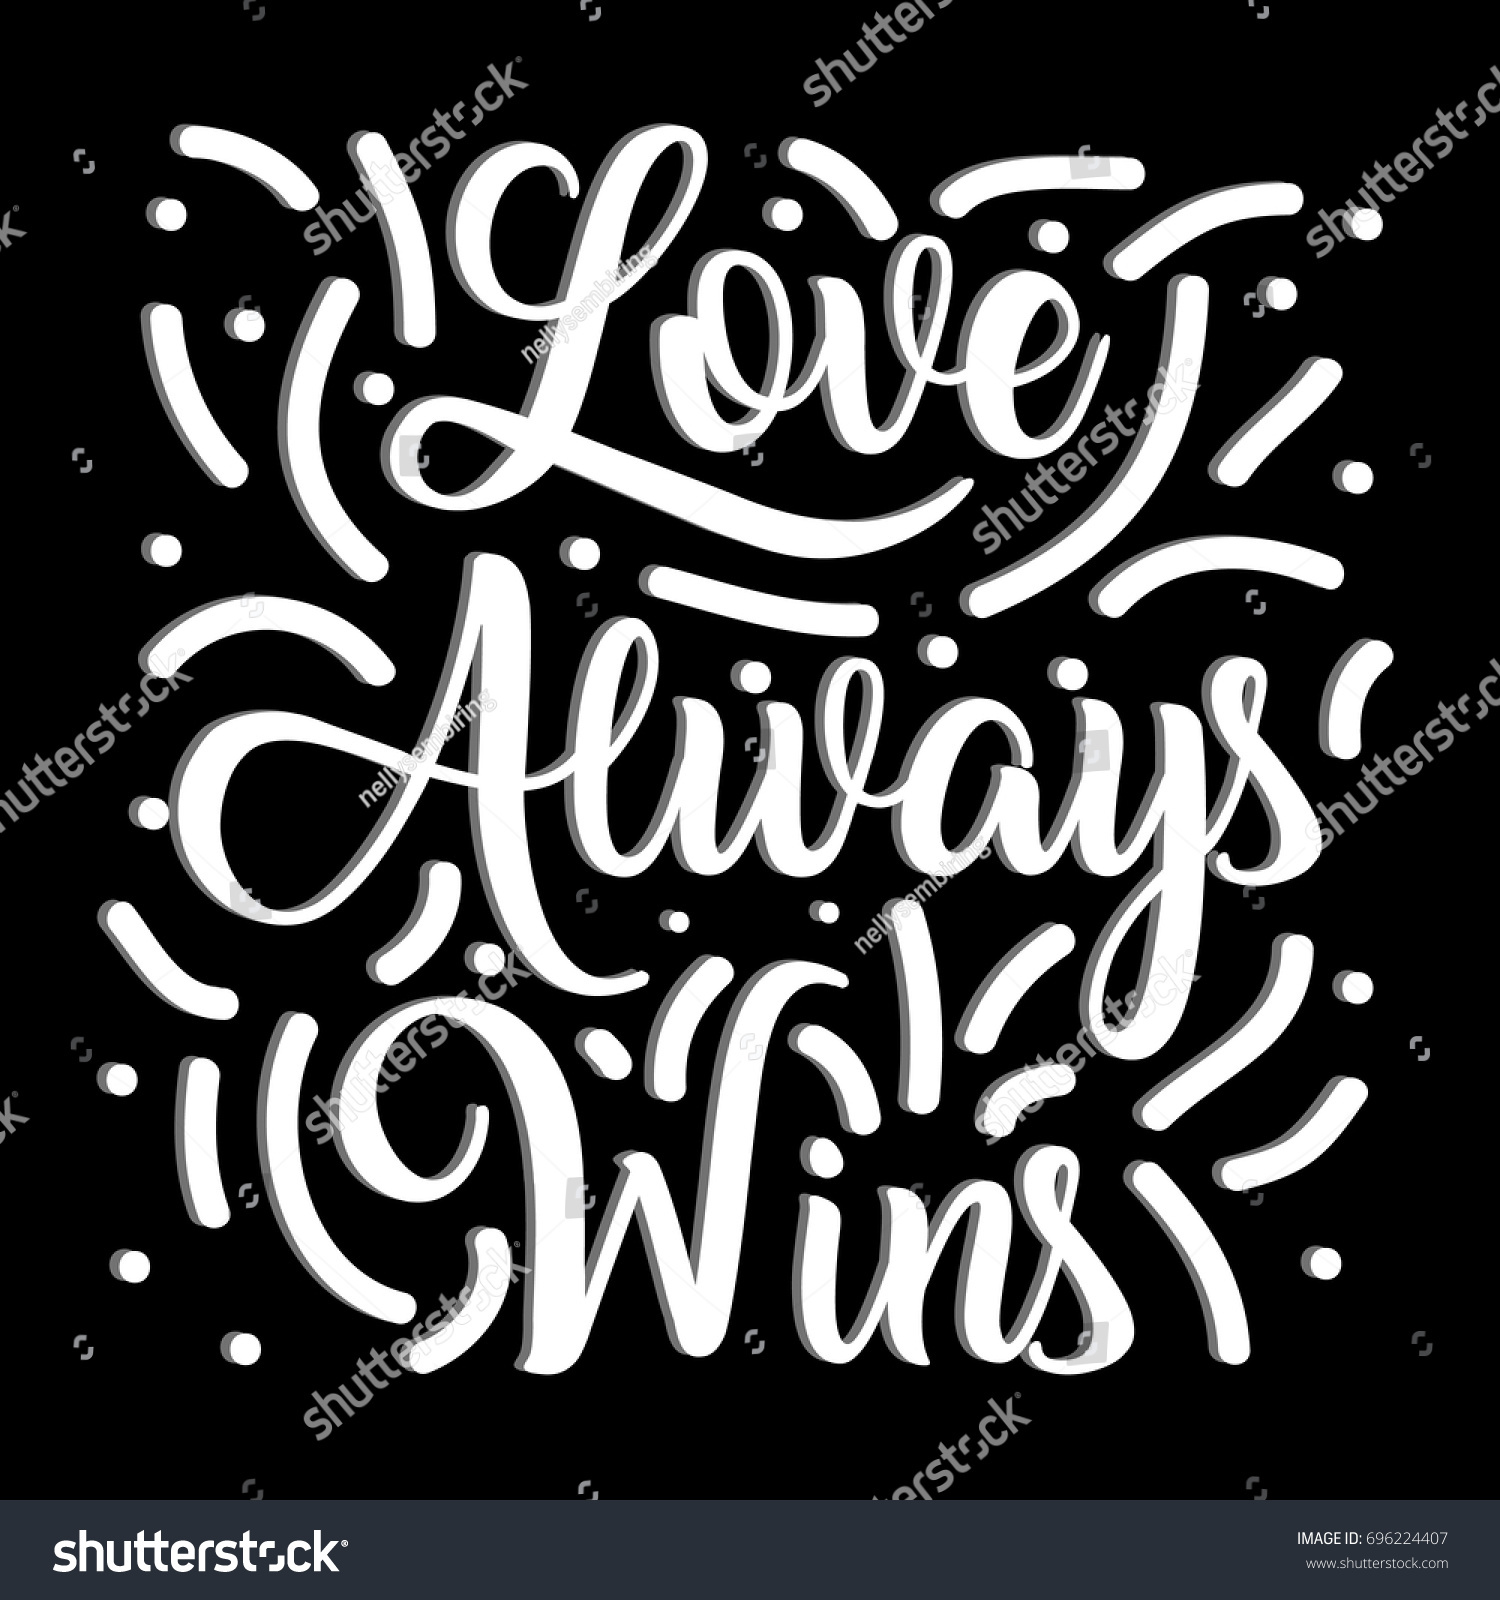 Download Love Always Wins Vector Illustration Hand Stock Vector ...